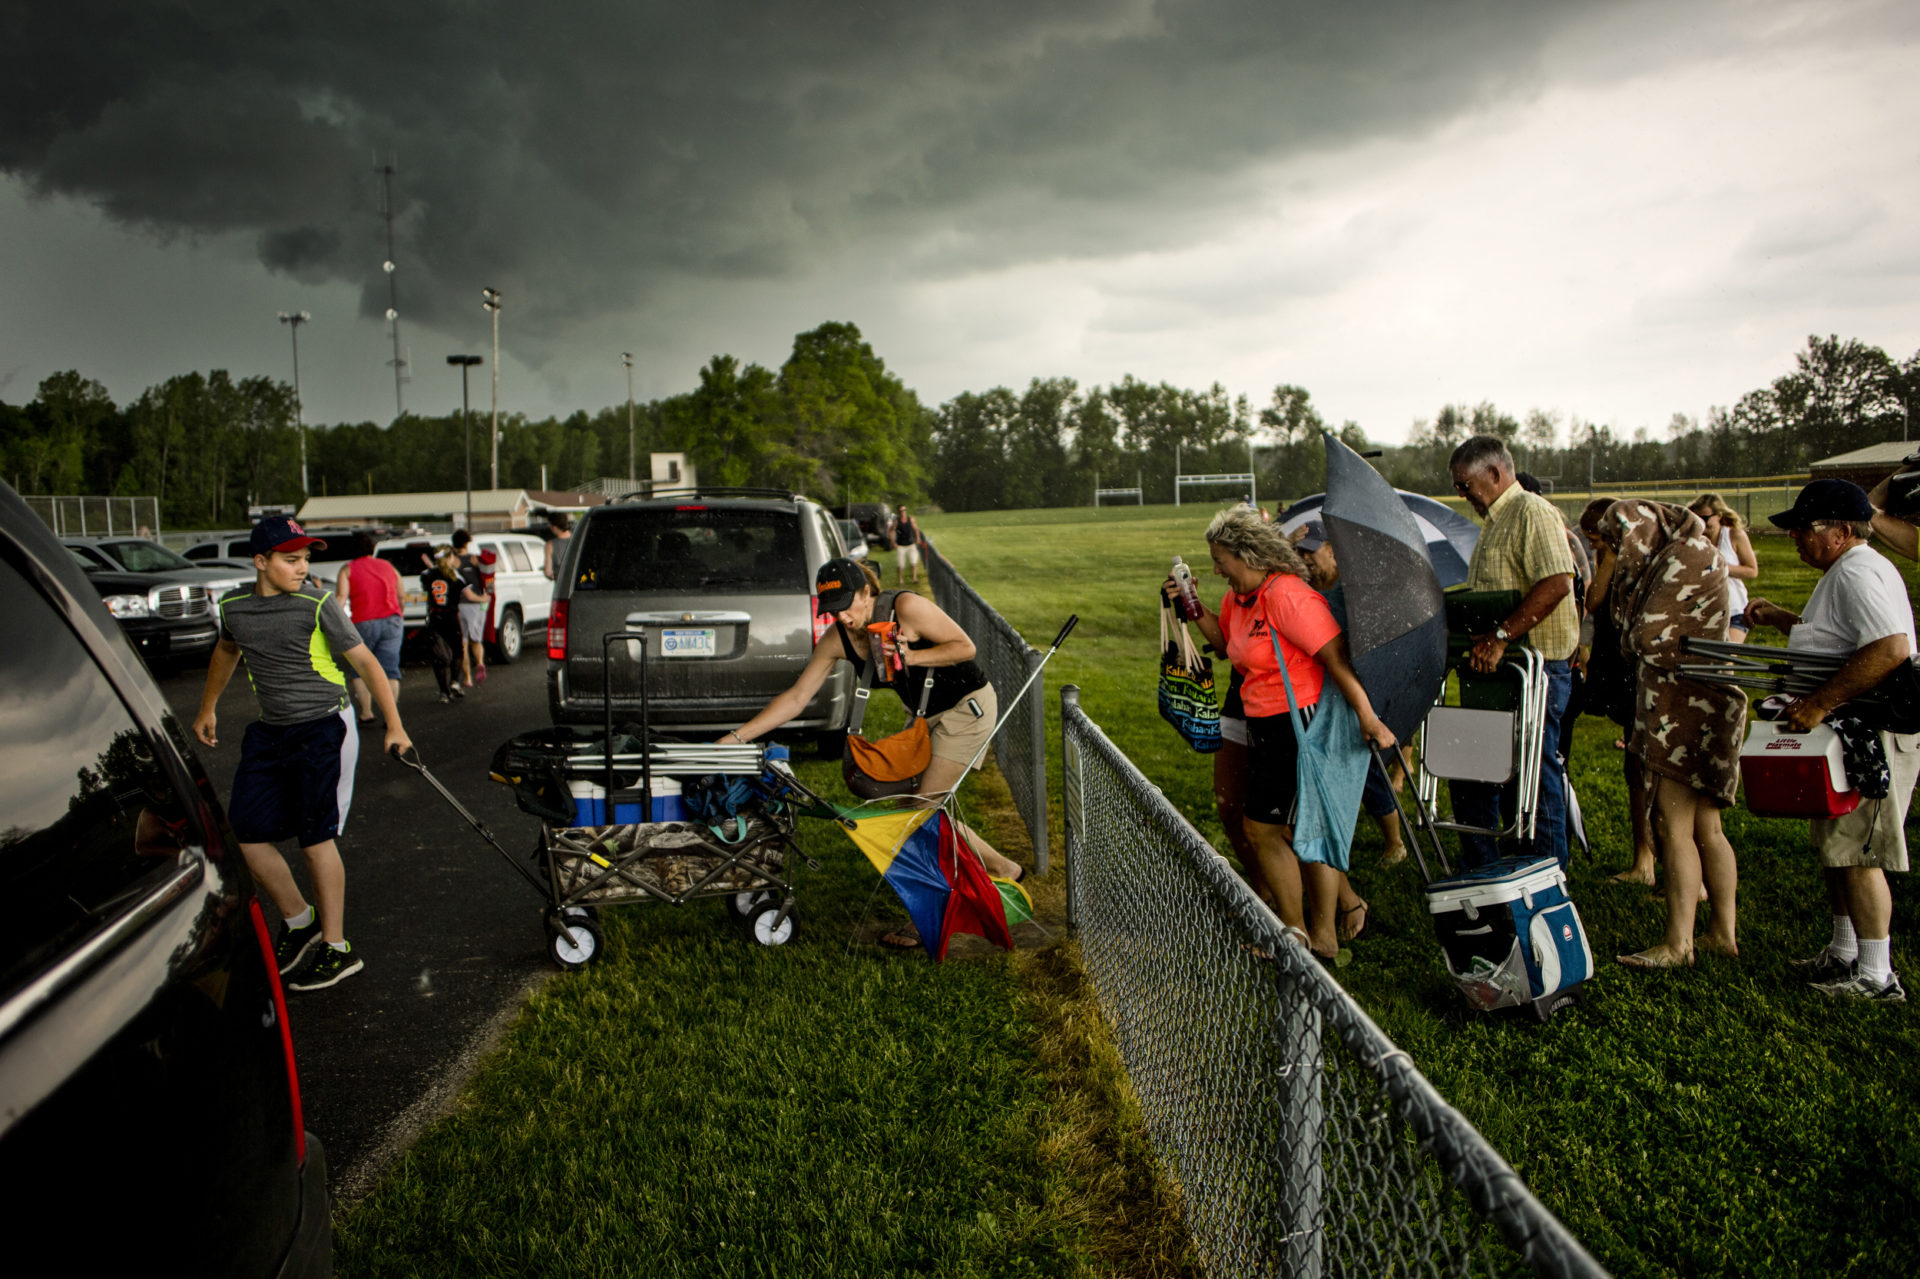 A storm approaches a softball field